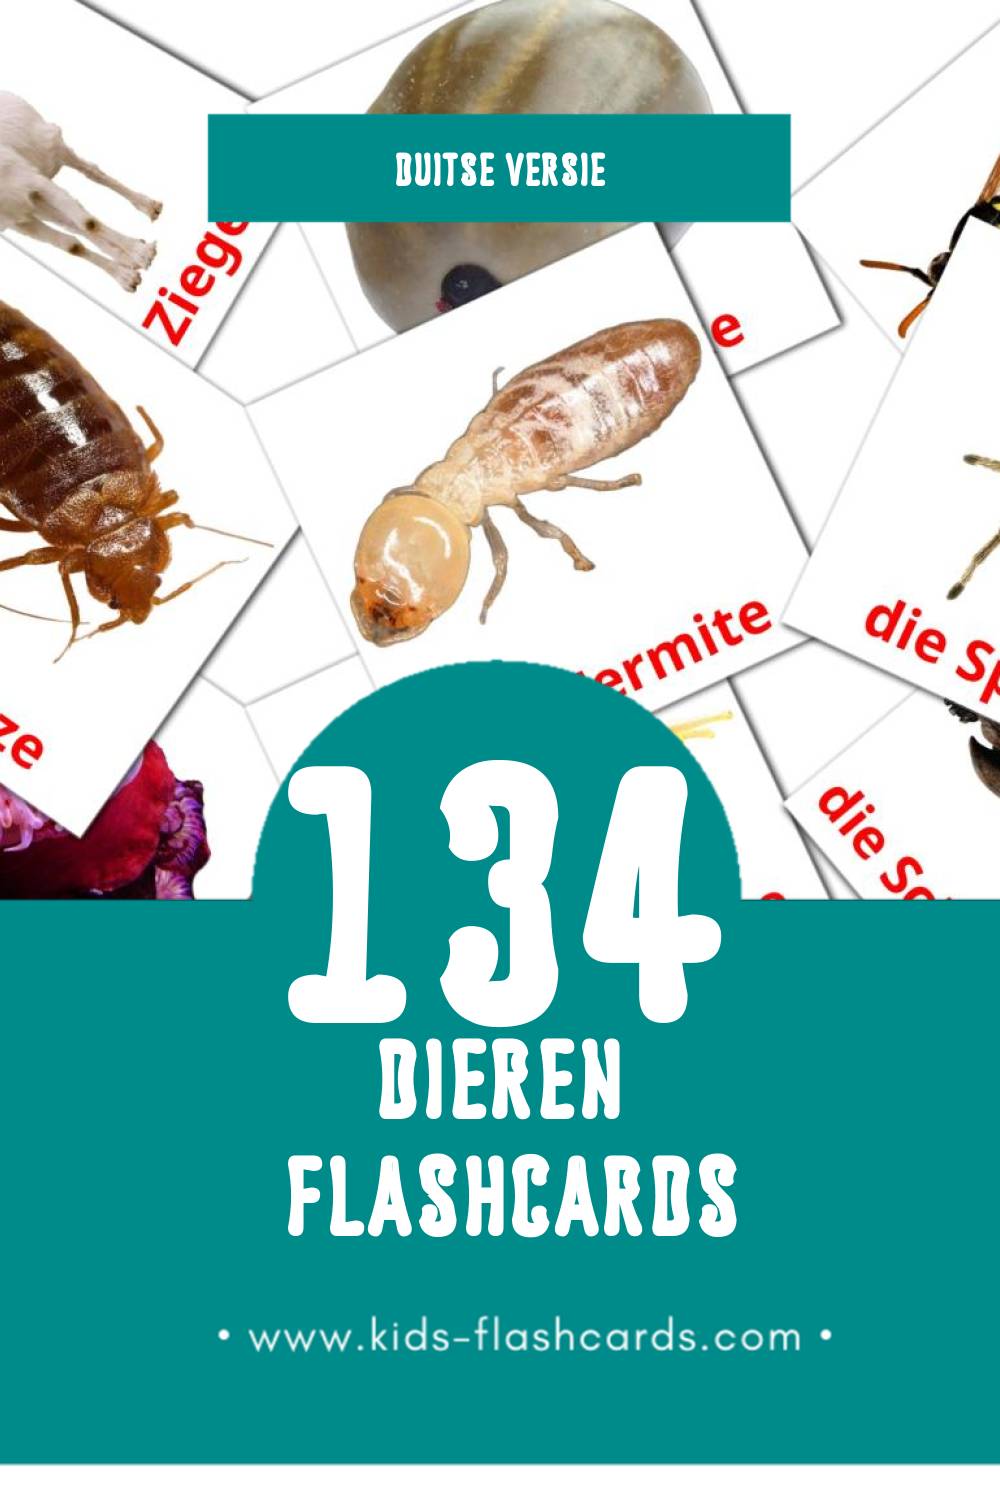 Visuele Tiere Flashcards voor Kleuters (134 kaarten in het Duits)